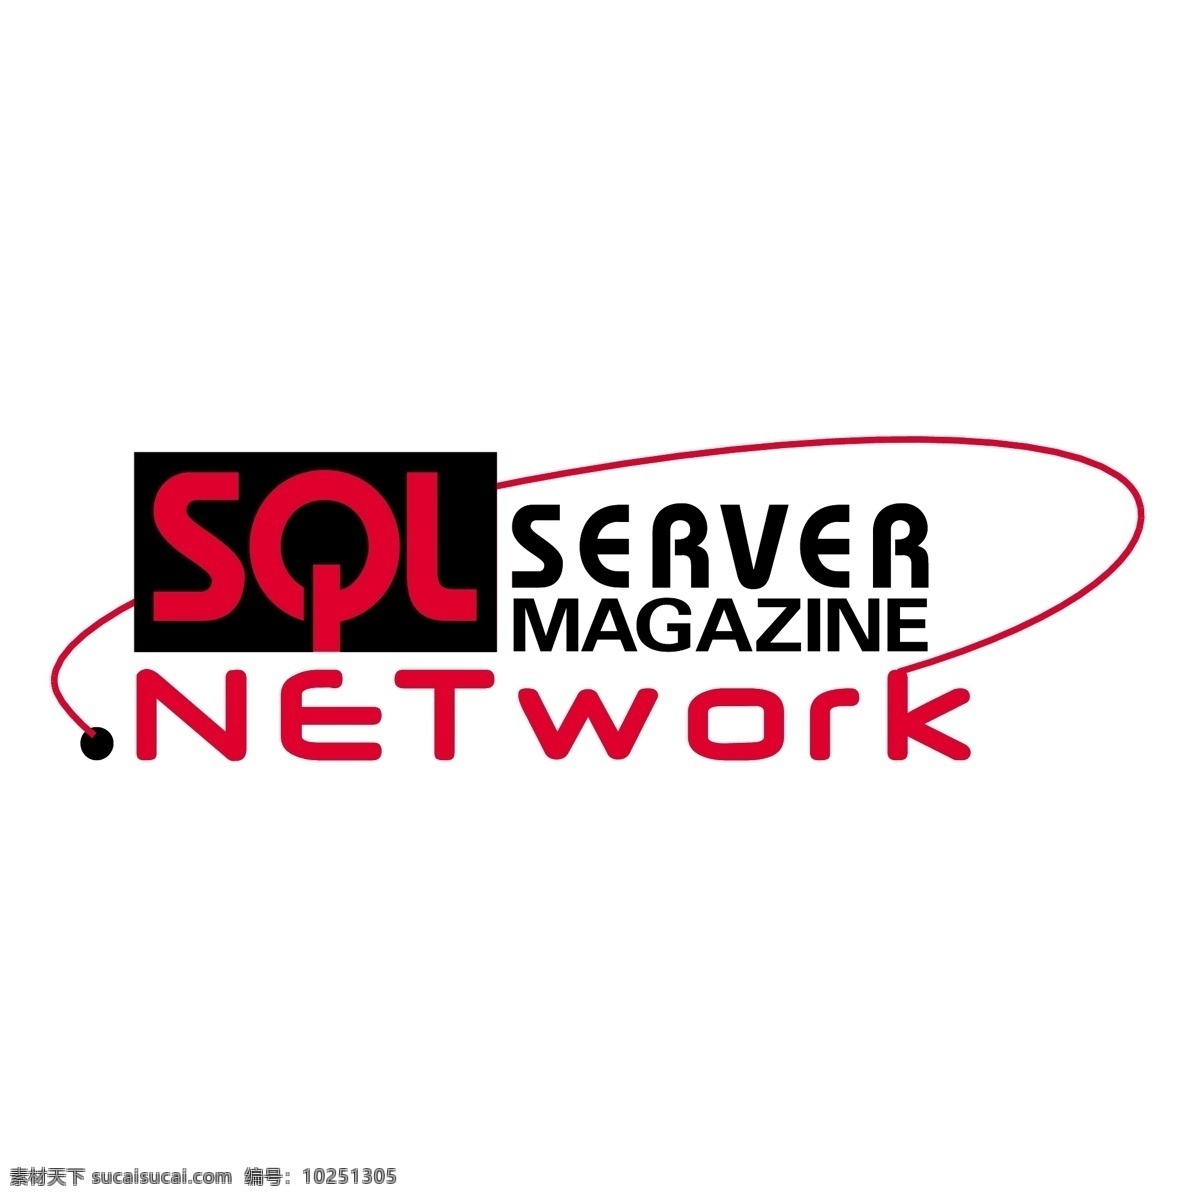 sql server 杂志 网络 免费 服务器 标识 白色